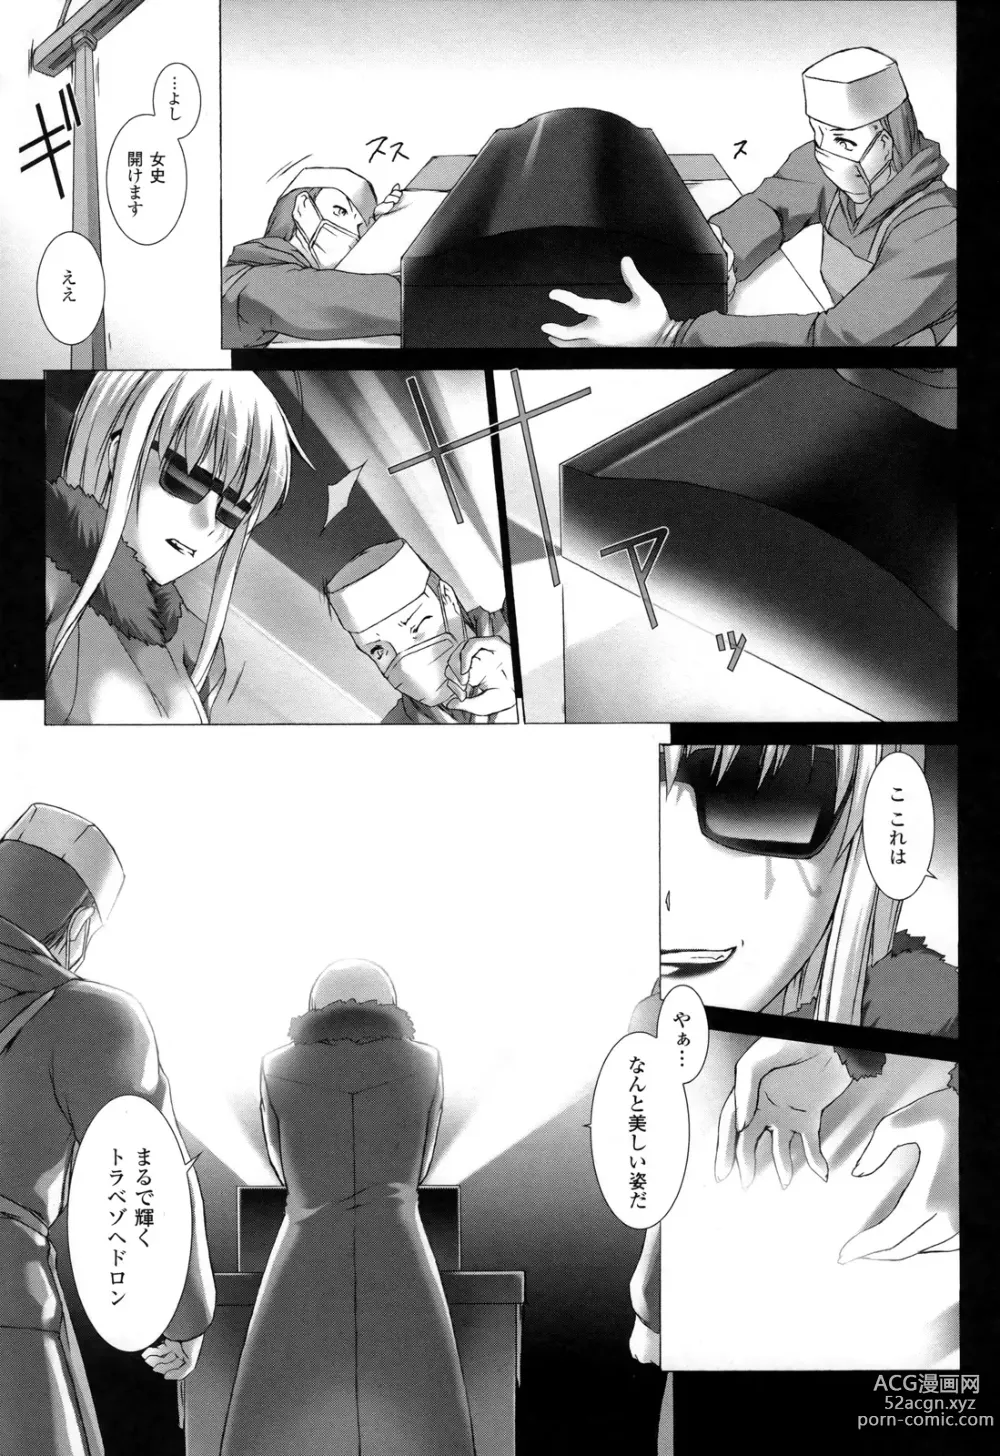 Page 12 of manga Ziggurat 2